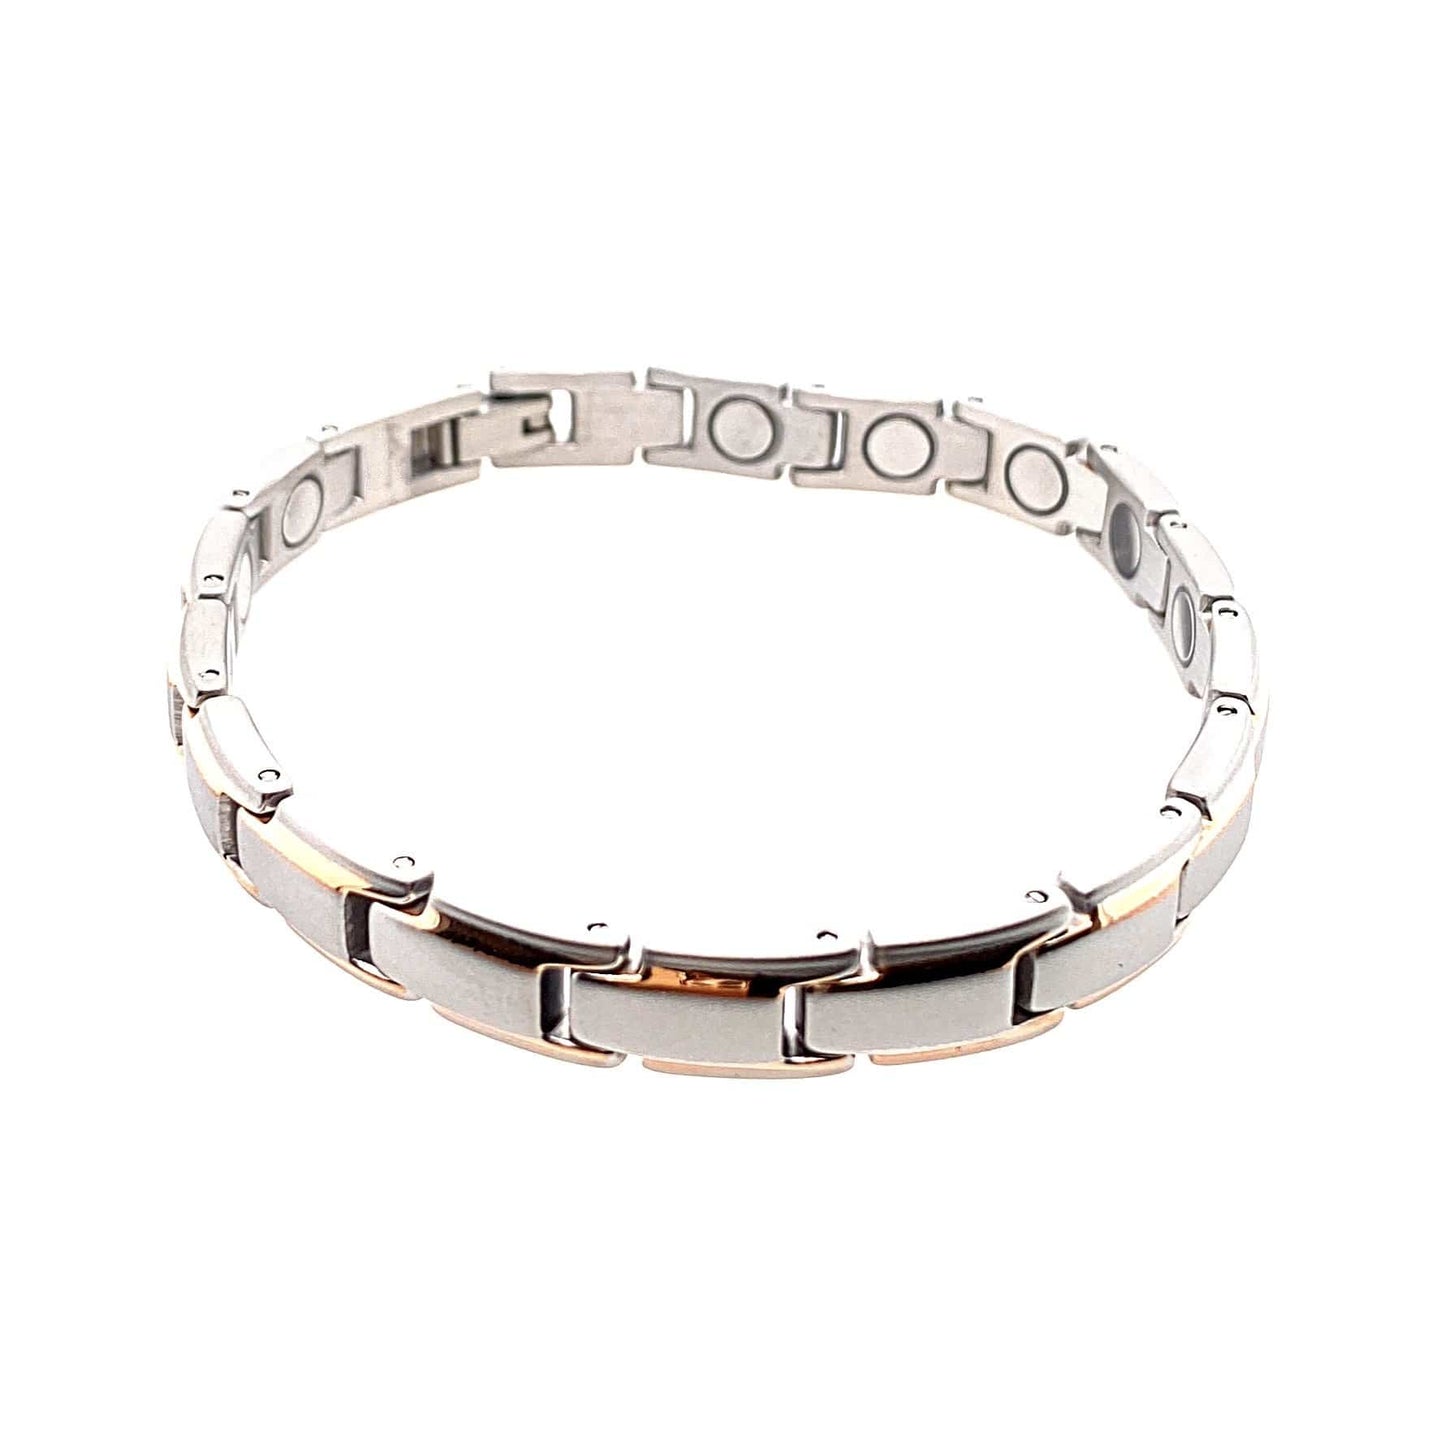 PEGASUS JEWELLERY Vitality Bracelets Vitality Infinity Bracelet - Steel & Rose